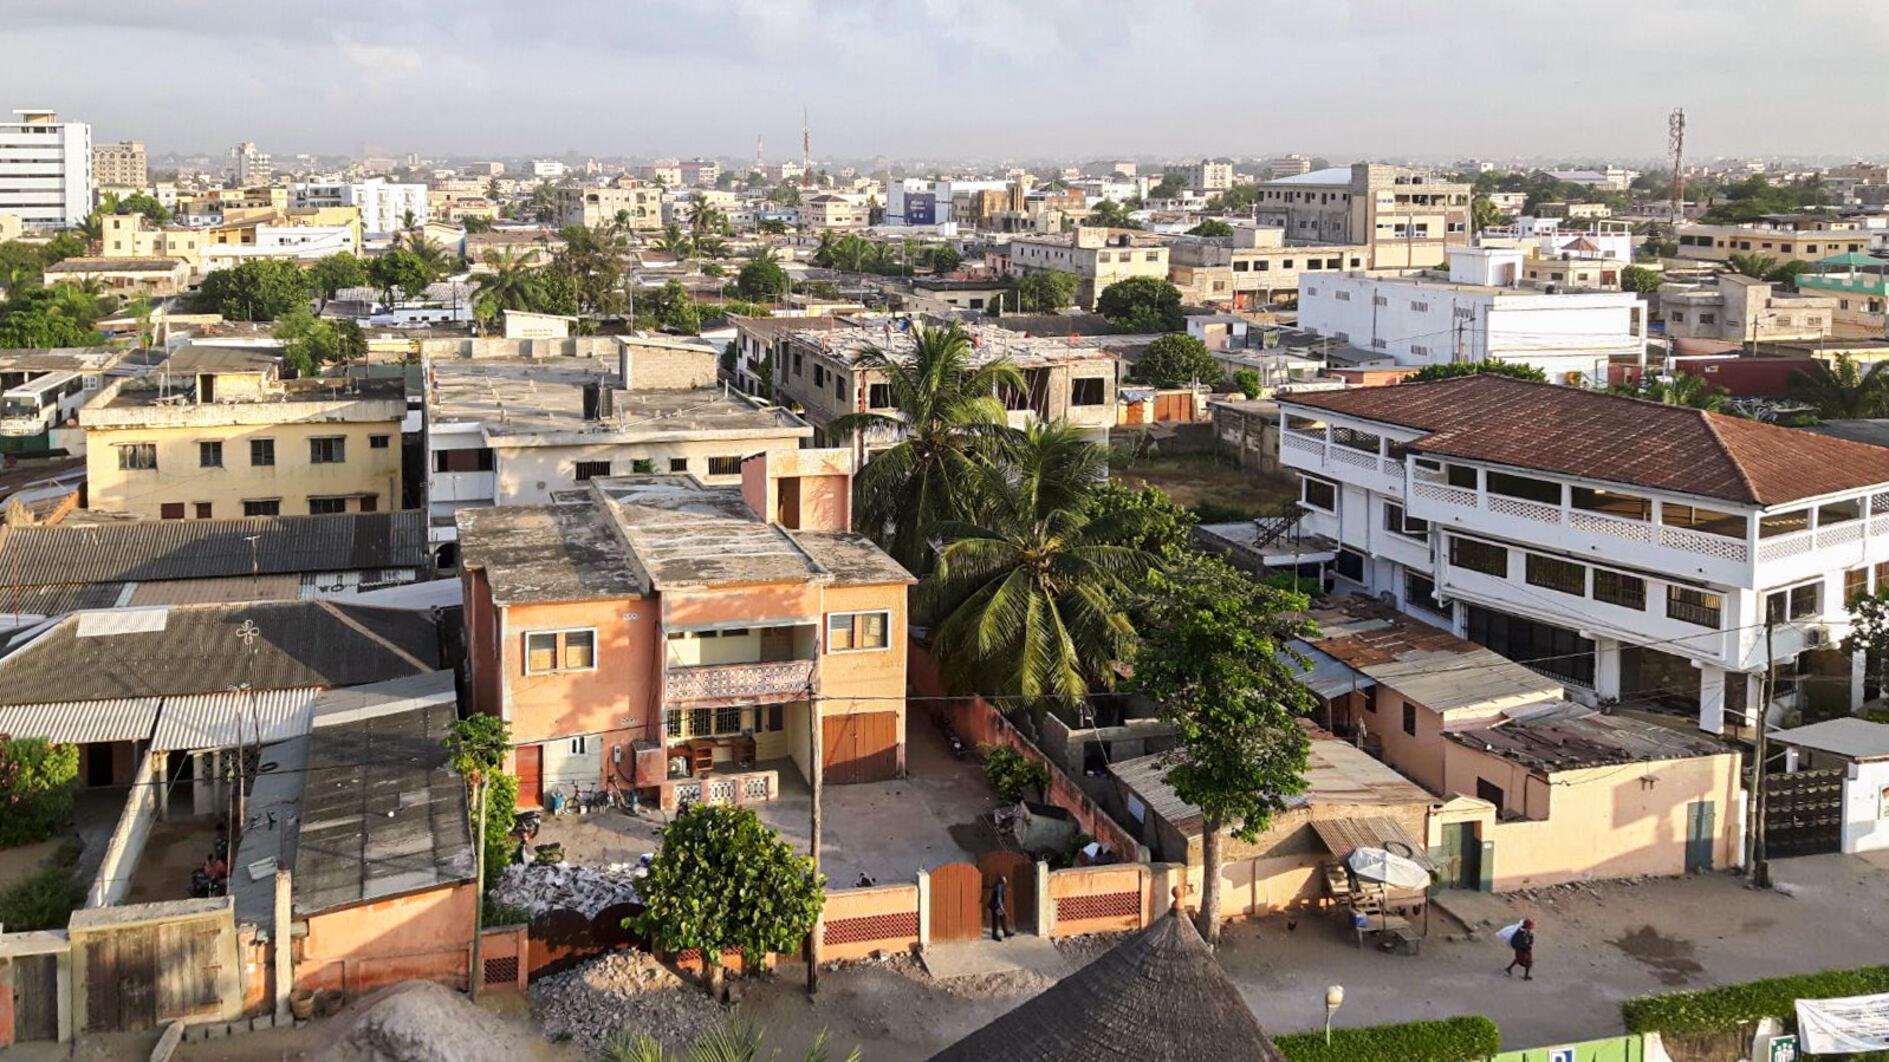 Door stroomstoringen dreigen de handelaren in Togo failliet te gaan